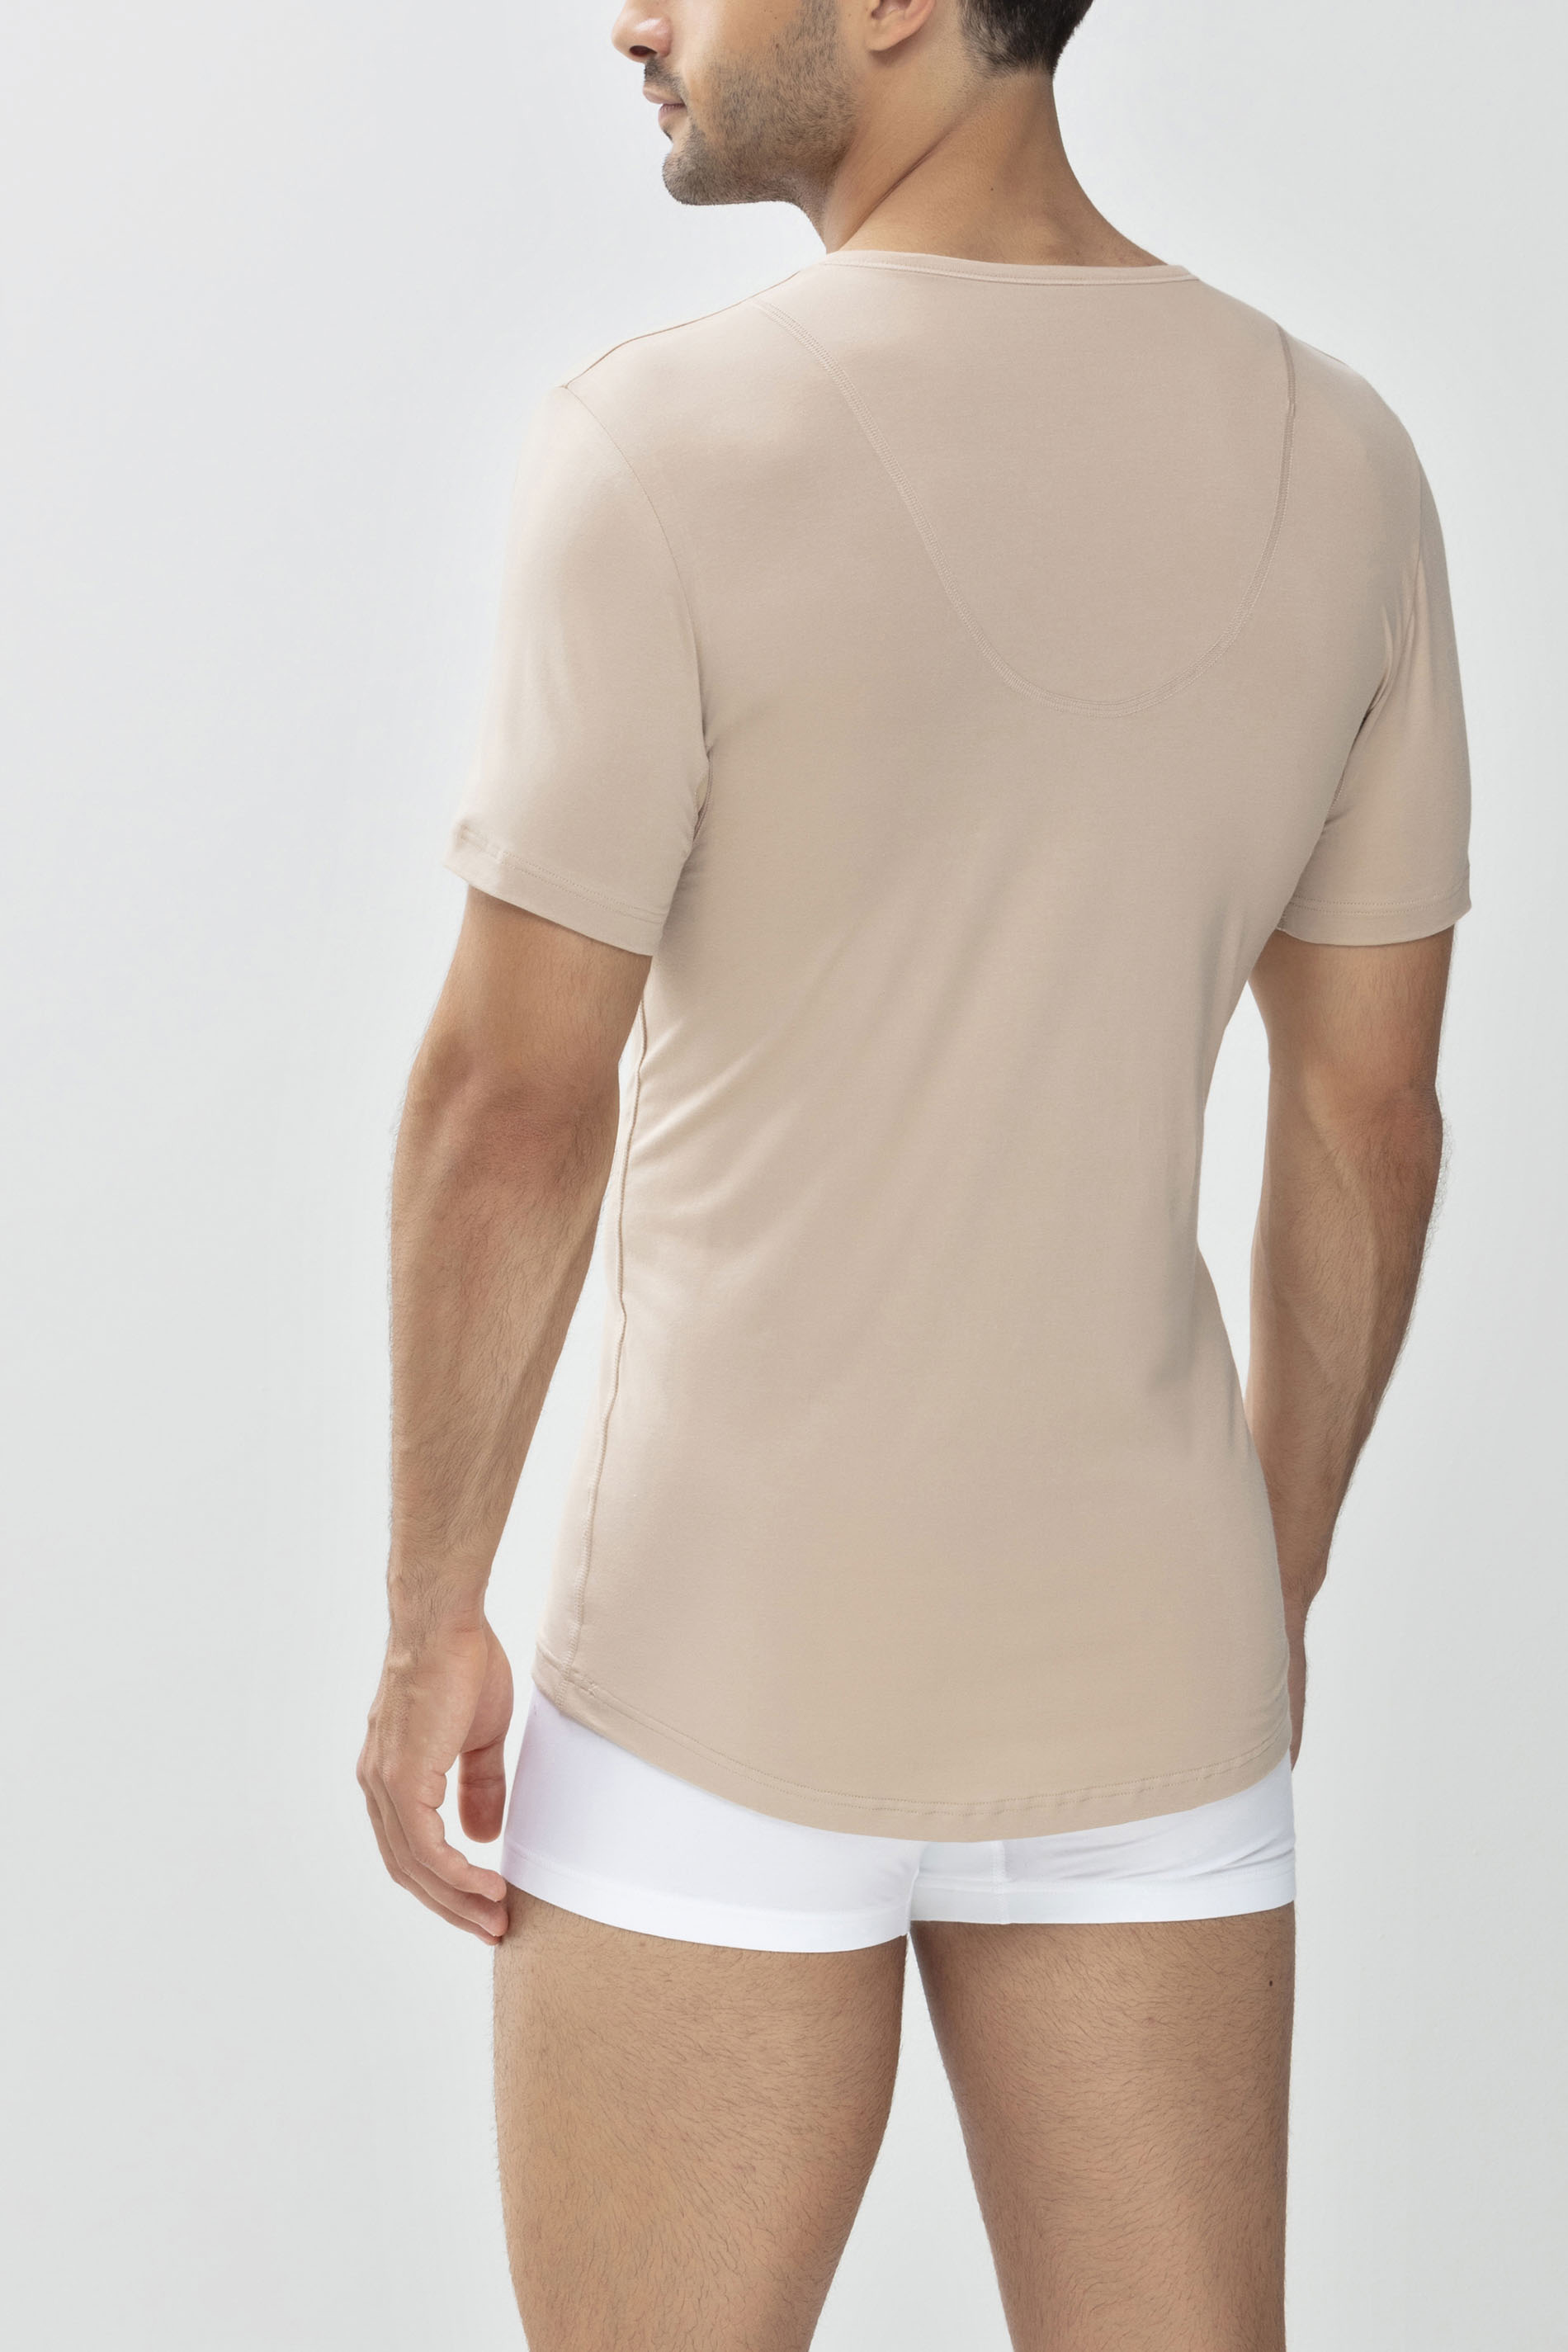 Das Drunterhemd - V-Neck Light Skin Serie Dry Cotton Functional  Rear View | mey®